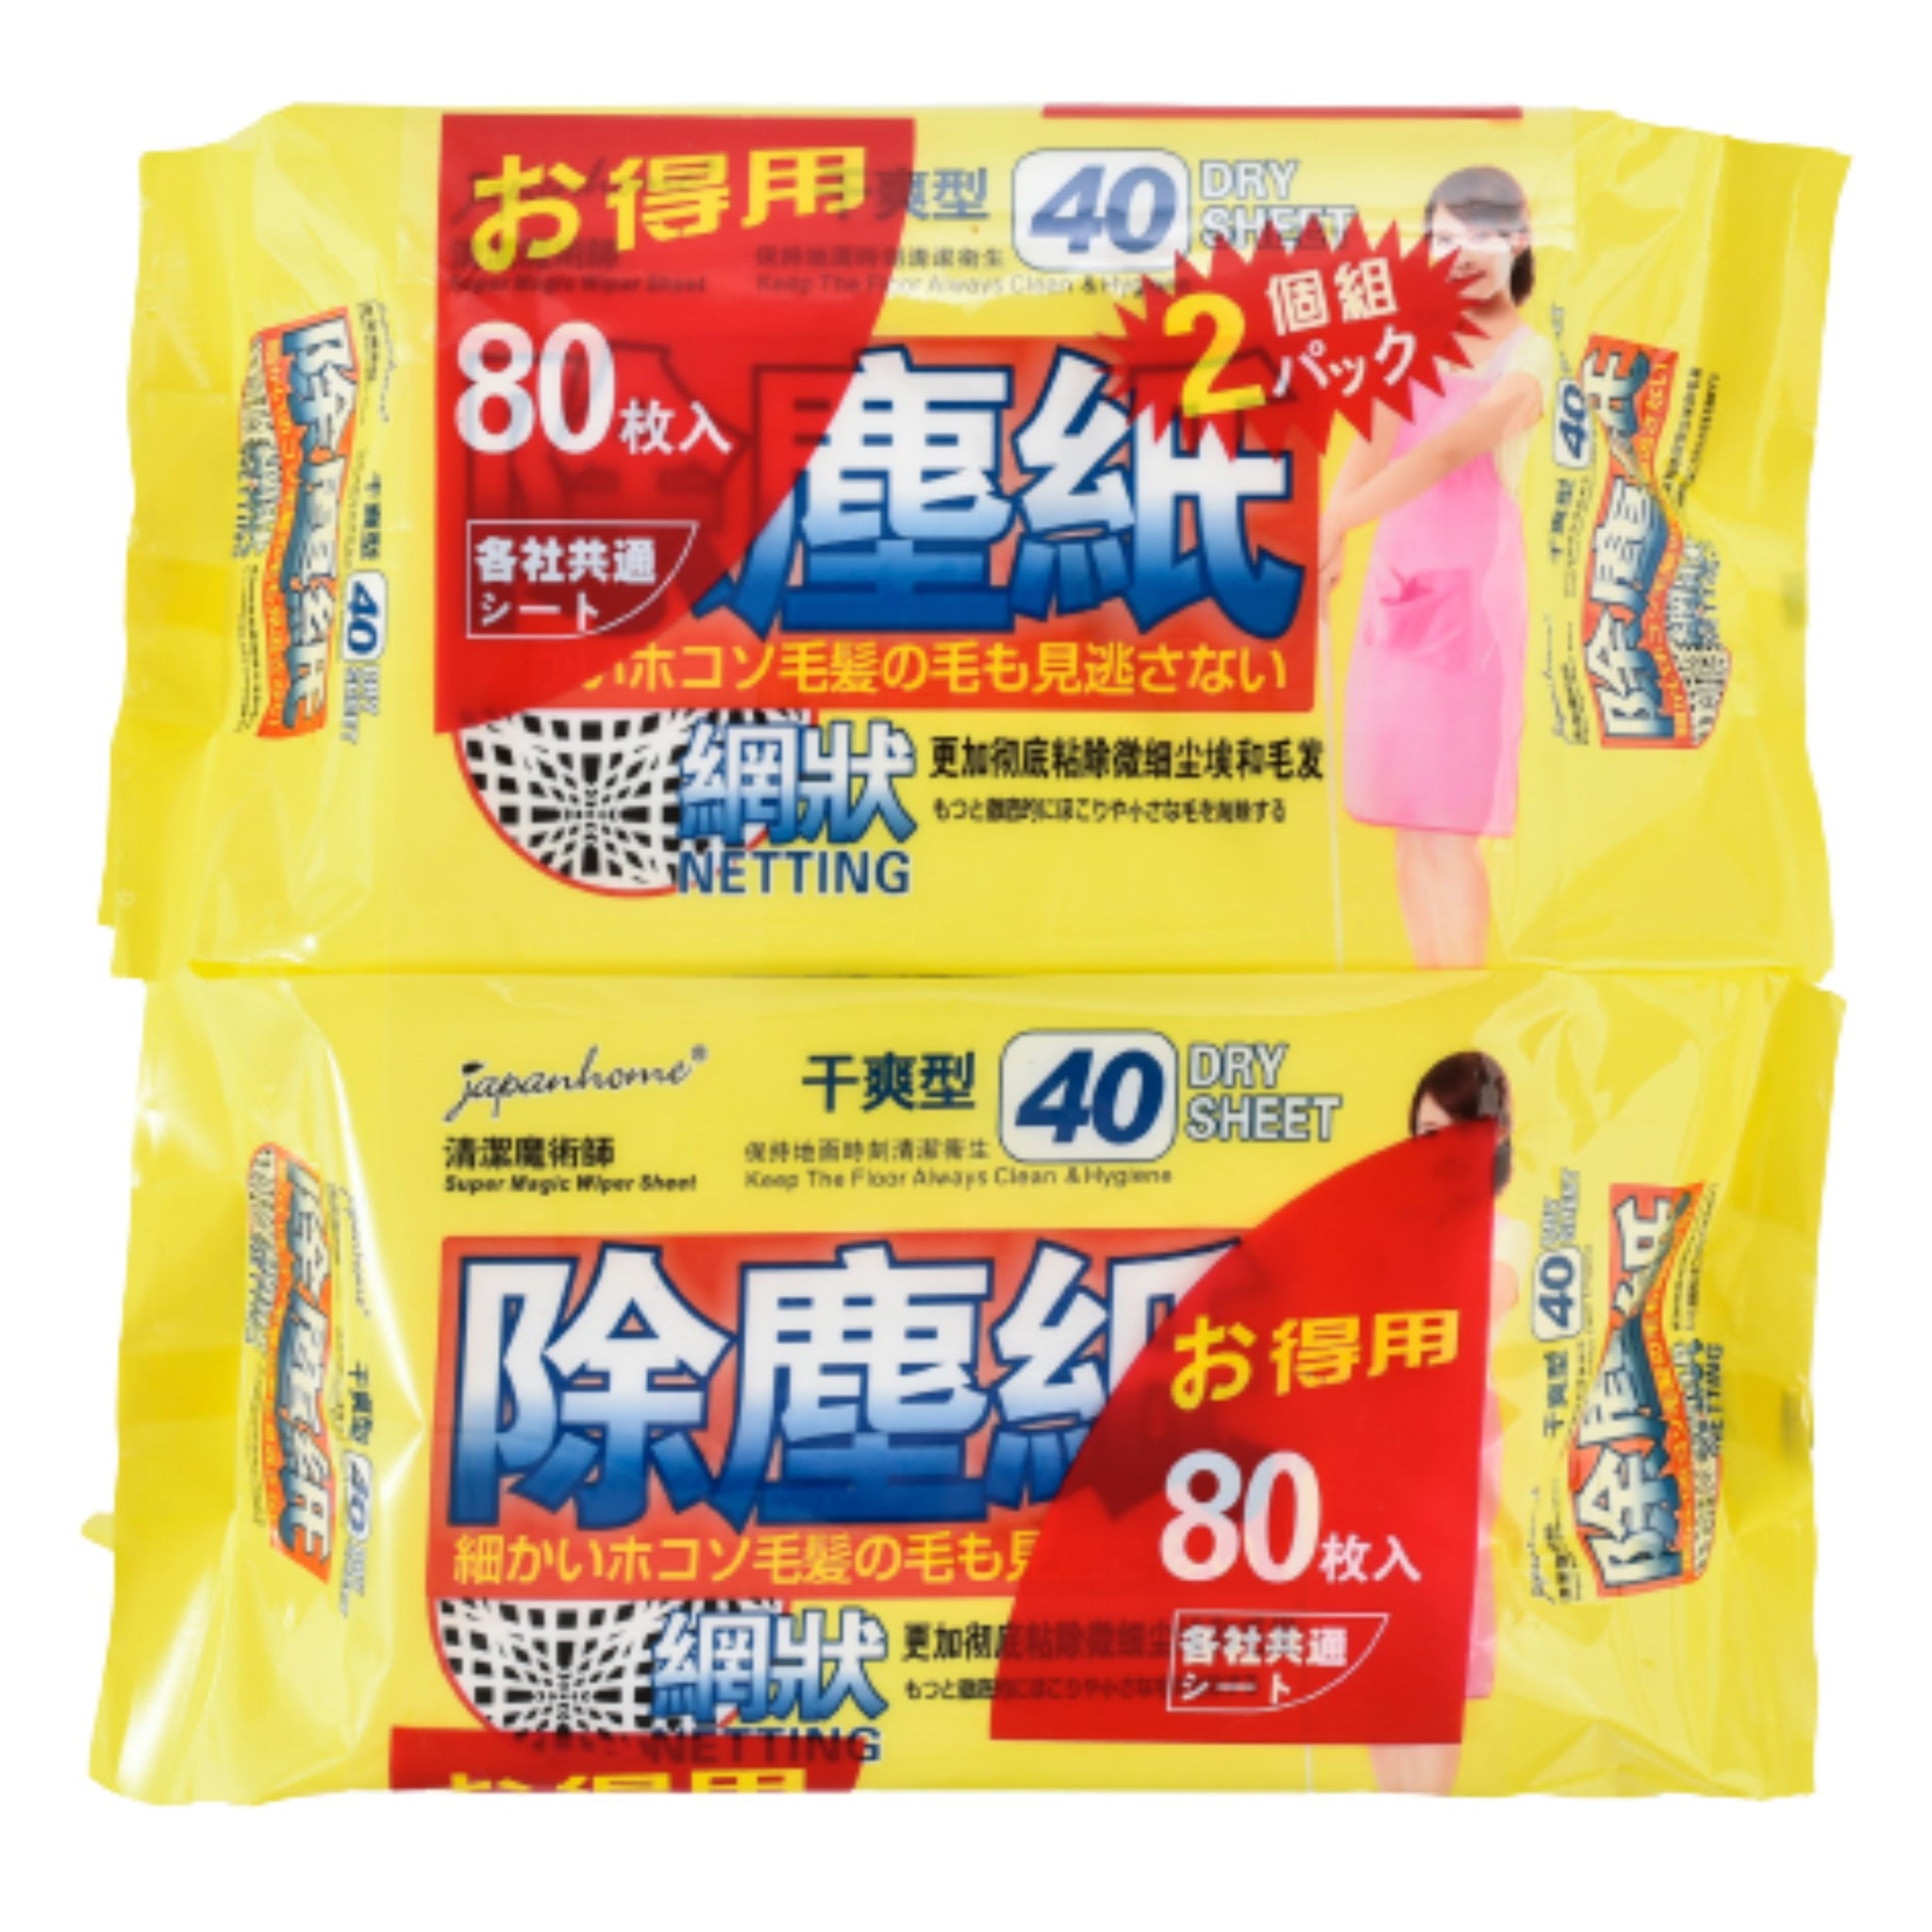 Japan Home Dry Floor Wipes Sheet 40s - Bundle of 2 / Bundle of 24